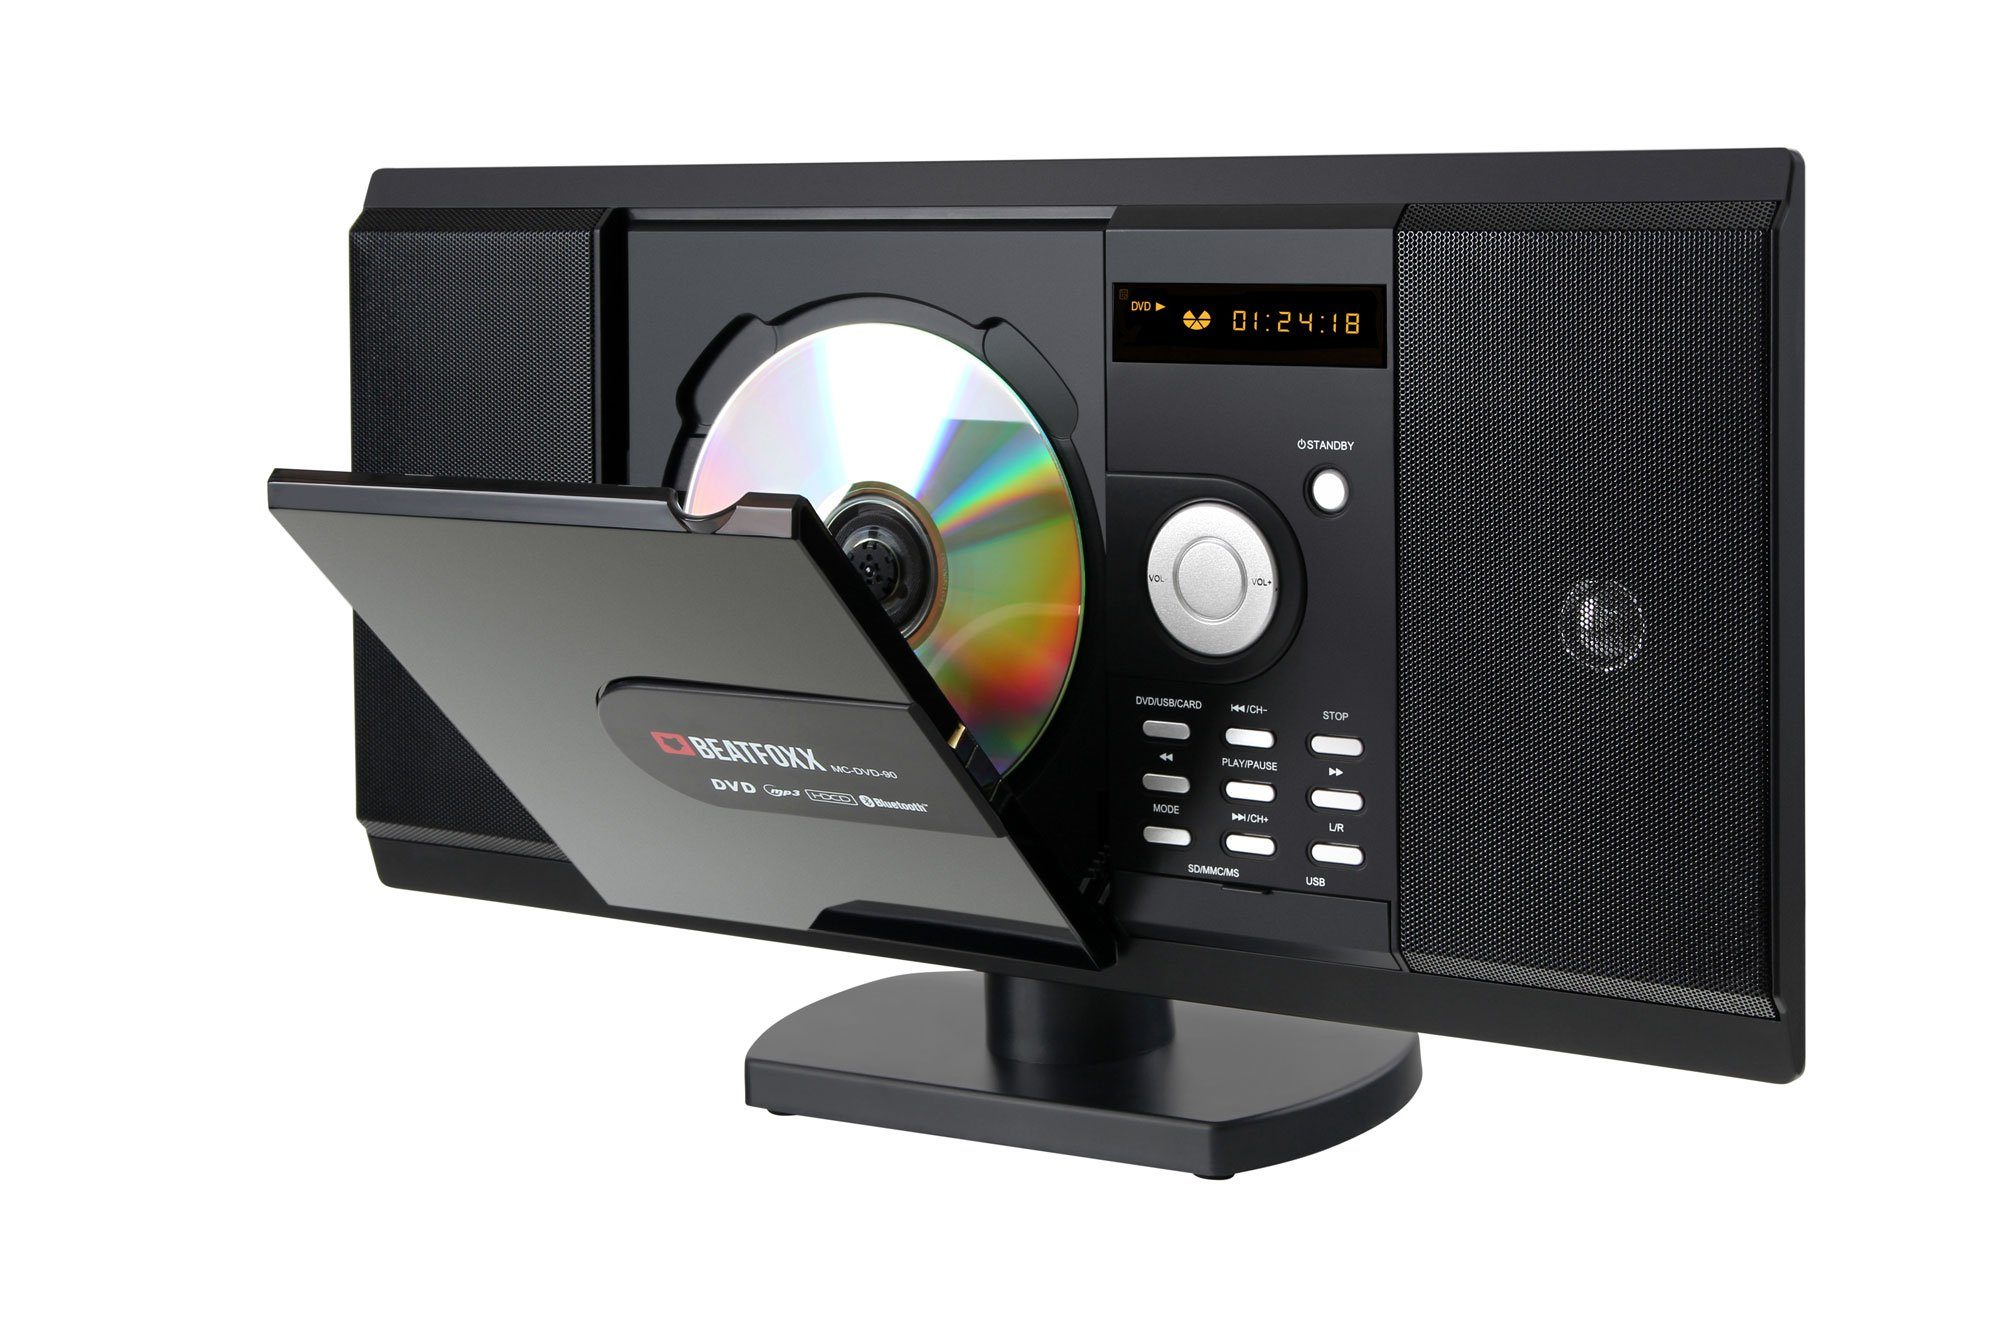 Beatfoxx »MC-DVD-90 Design Kompaktanlage mit DVD-Player, CD/MP3-Player,  USB/SD-Slots, Bluetooth, HDMI und AUX, Fernbedienung« Stereoanlage  (UKW/MW-Radio, 6,00 W) online kaufen | OTTO